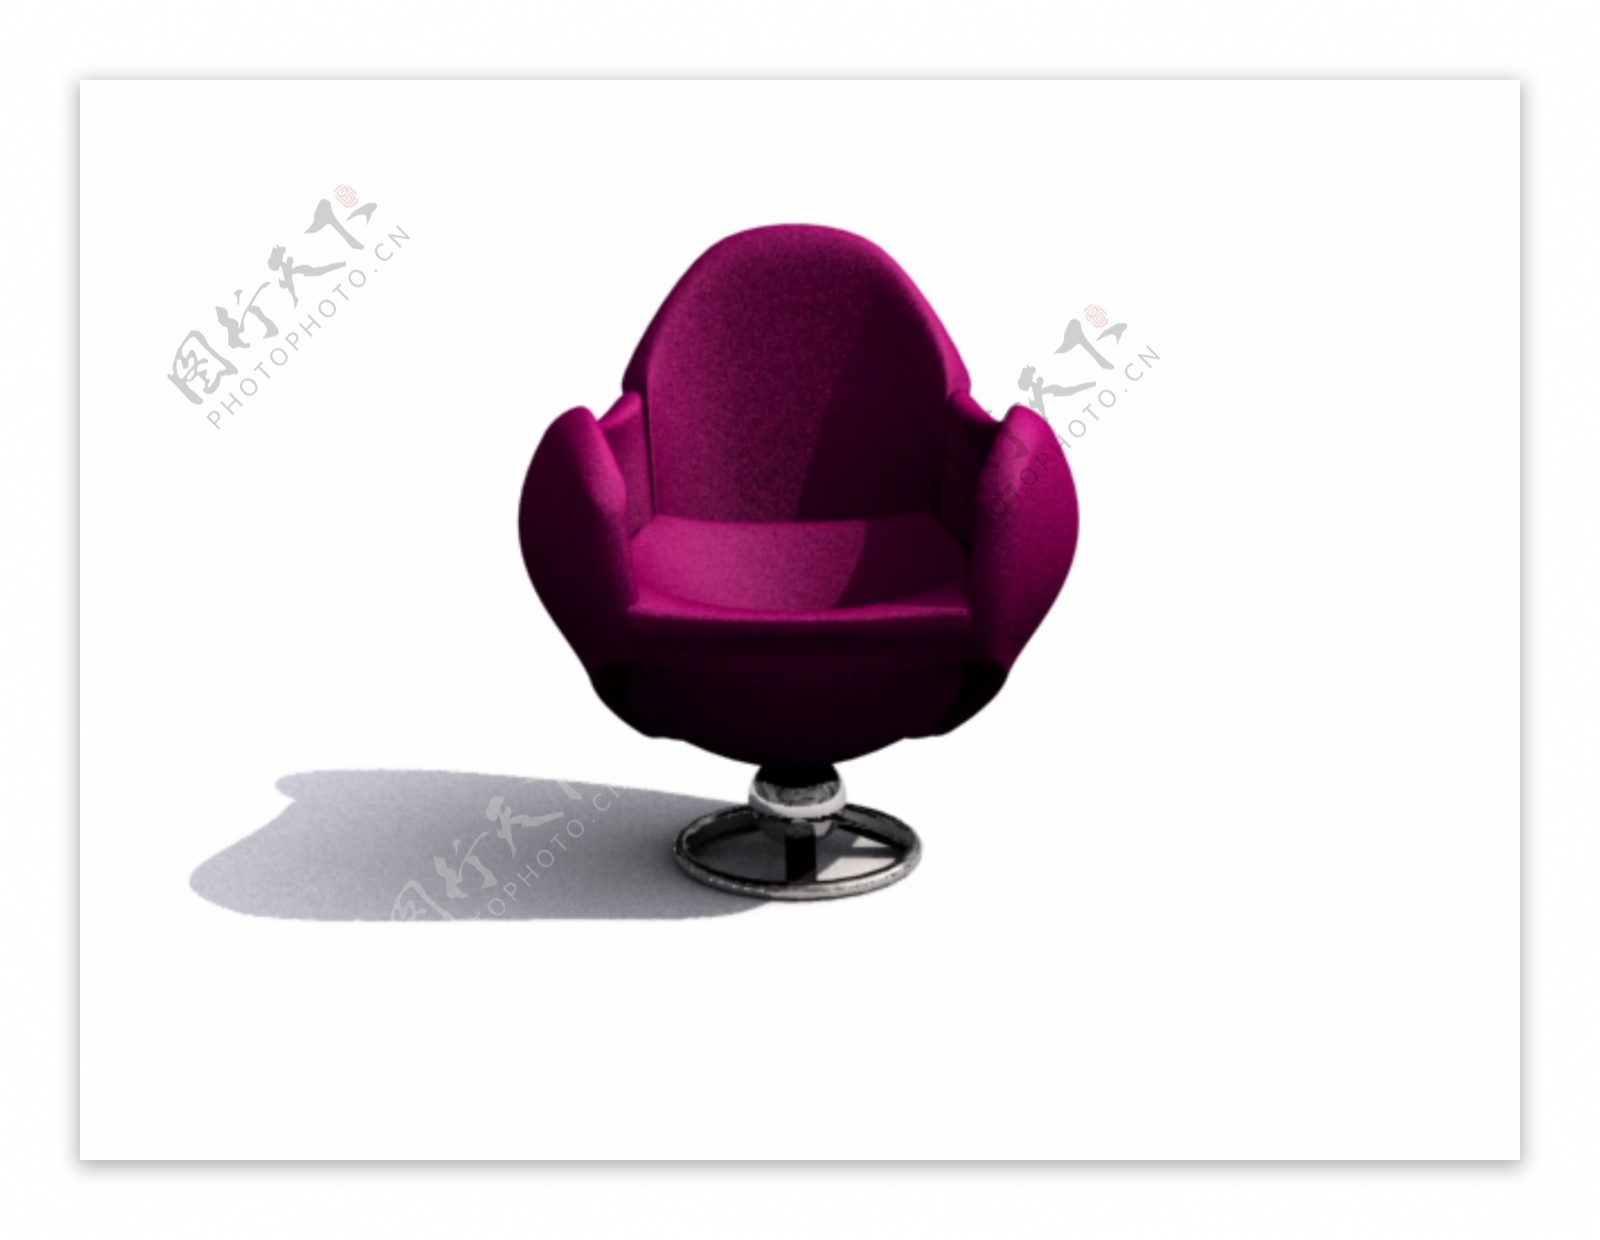 室内家具之椅子0883D模型